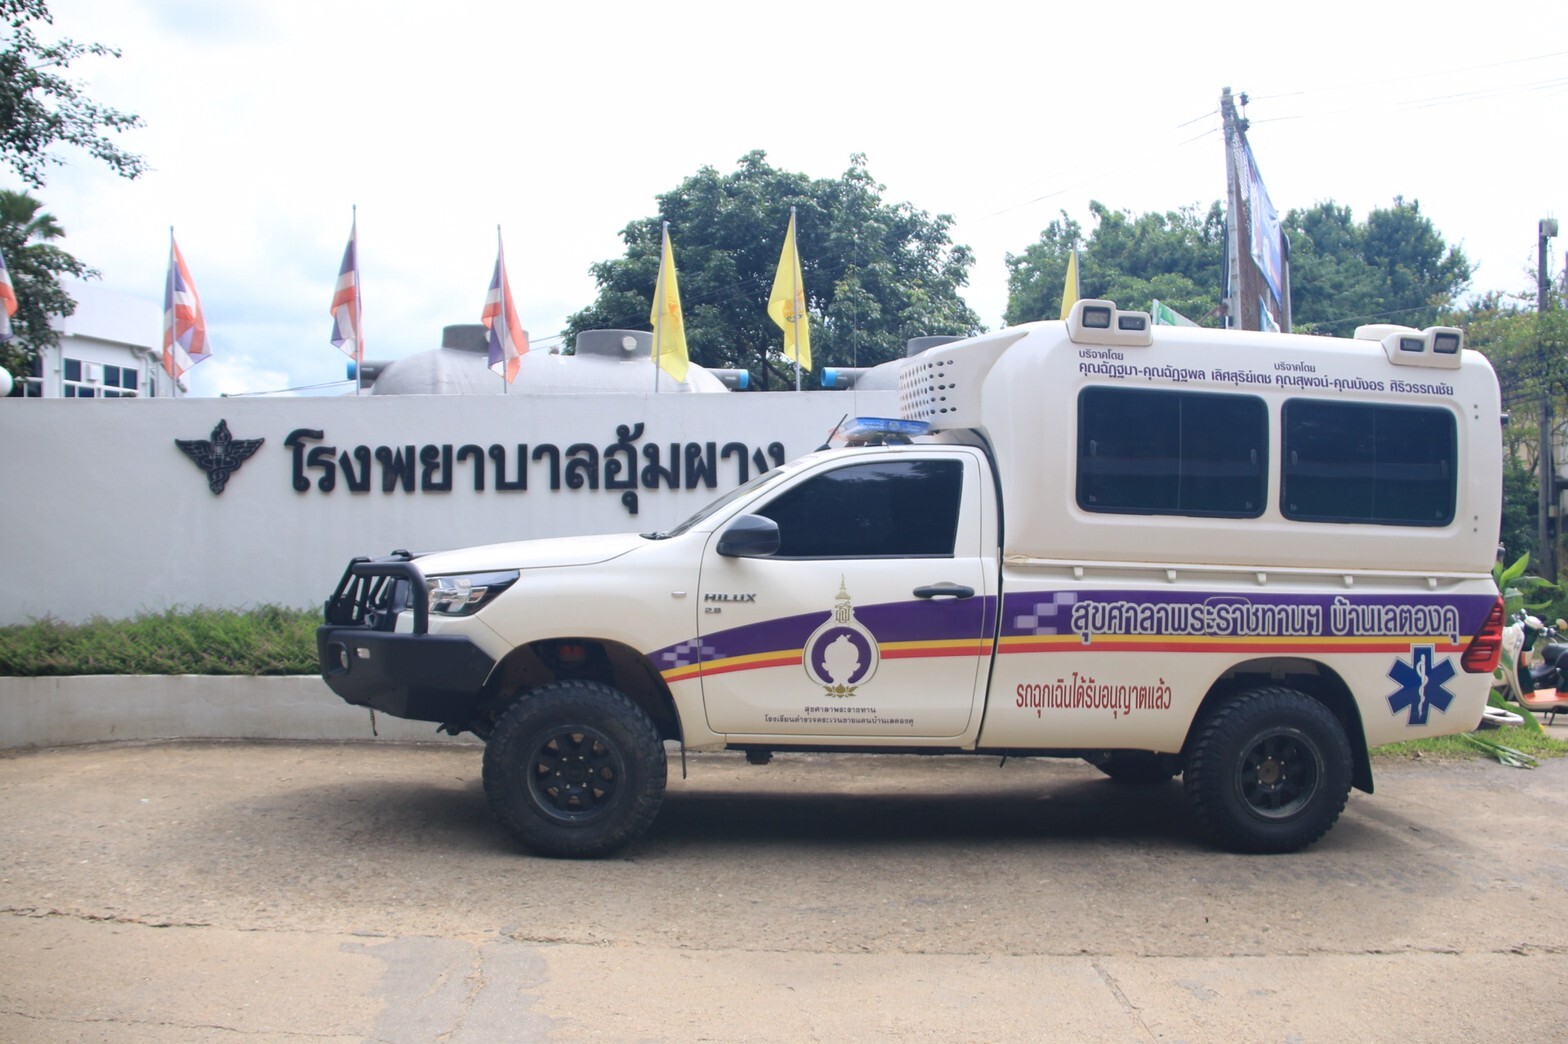 ARB ประเทศไทย สนับสนุนกันชนรุ่นซัมมิท แก่รถพยาบาลสุขศาลาพระราชทาน รร.ตชด.บ้านเลตองคุ และ รร.ตชด.บ้านแม่จันทะ ต.แม่จัน อ.อุ้มผาง จ.ตาก